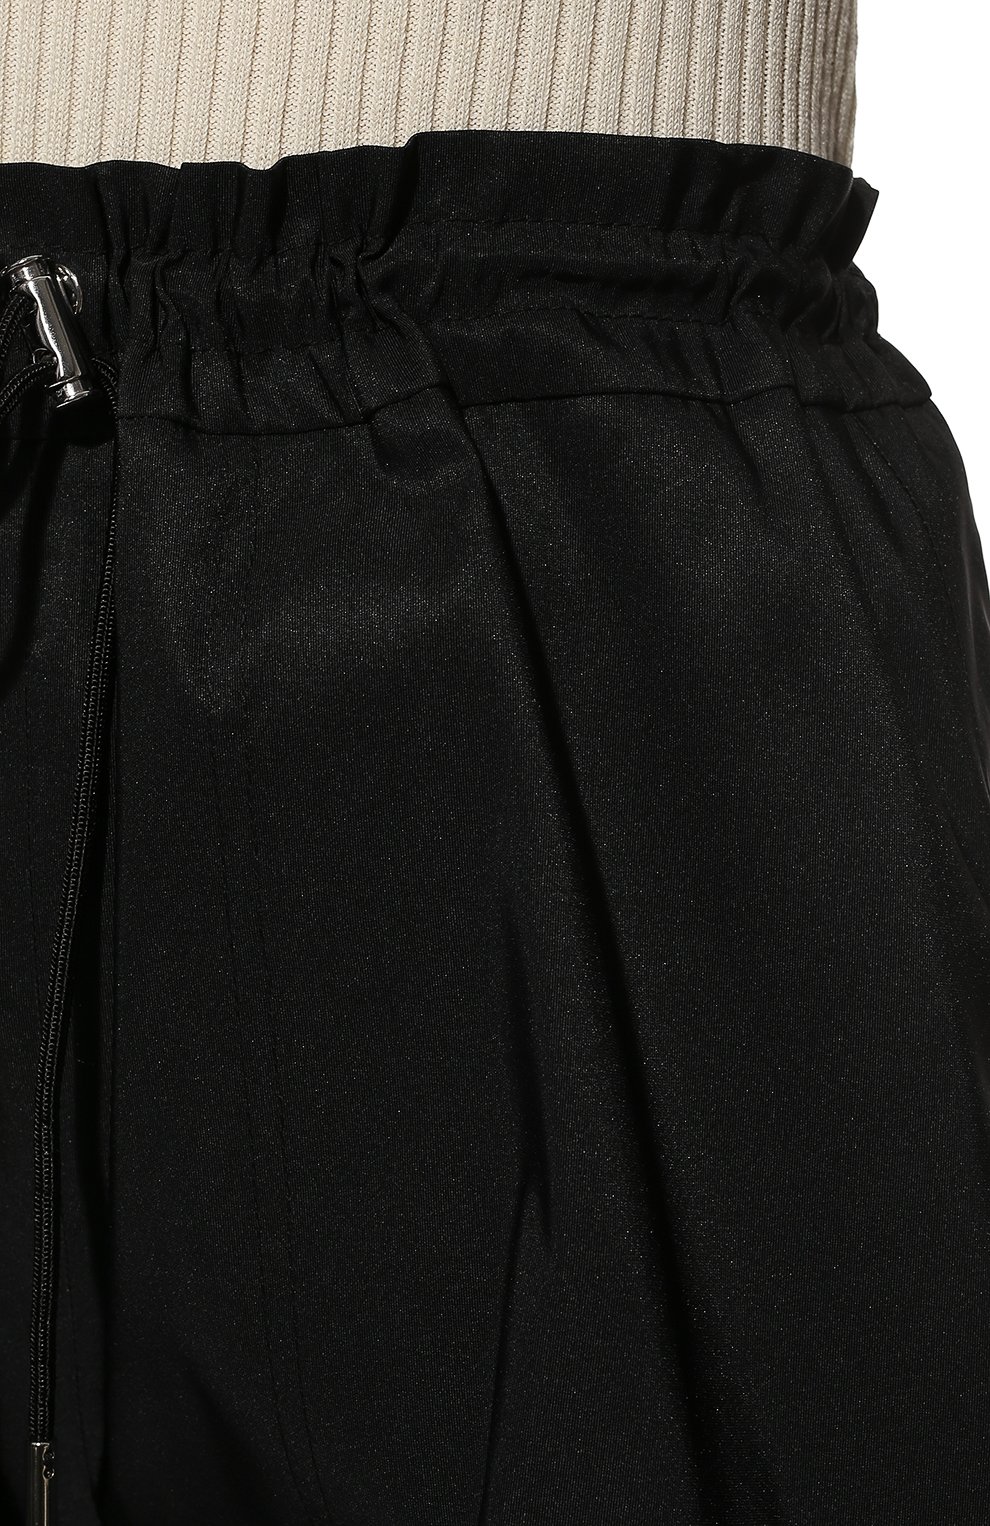 Женские шорты ALEXANDER MCQUEEN черного цвета, арт. 661560/QEACM | Фото 5 (Женское Кросс-КТ: Шорты-одежда; Длина Ж (юбки, платья, шорты): Мини; Материал внешний: Синтетический материал; Стили: Спорт-шик)